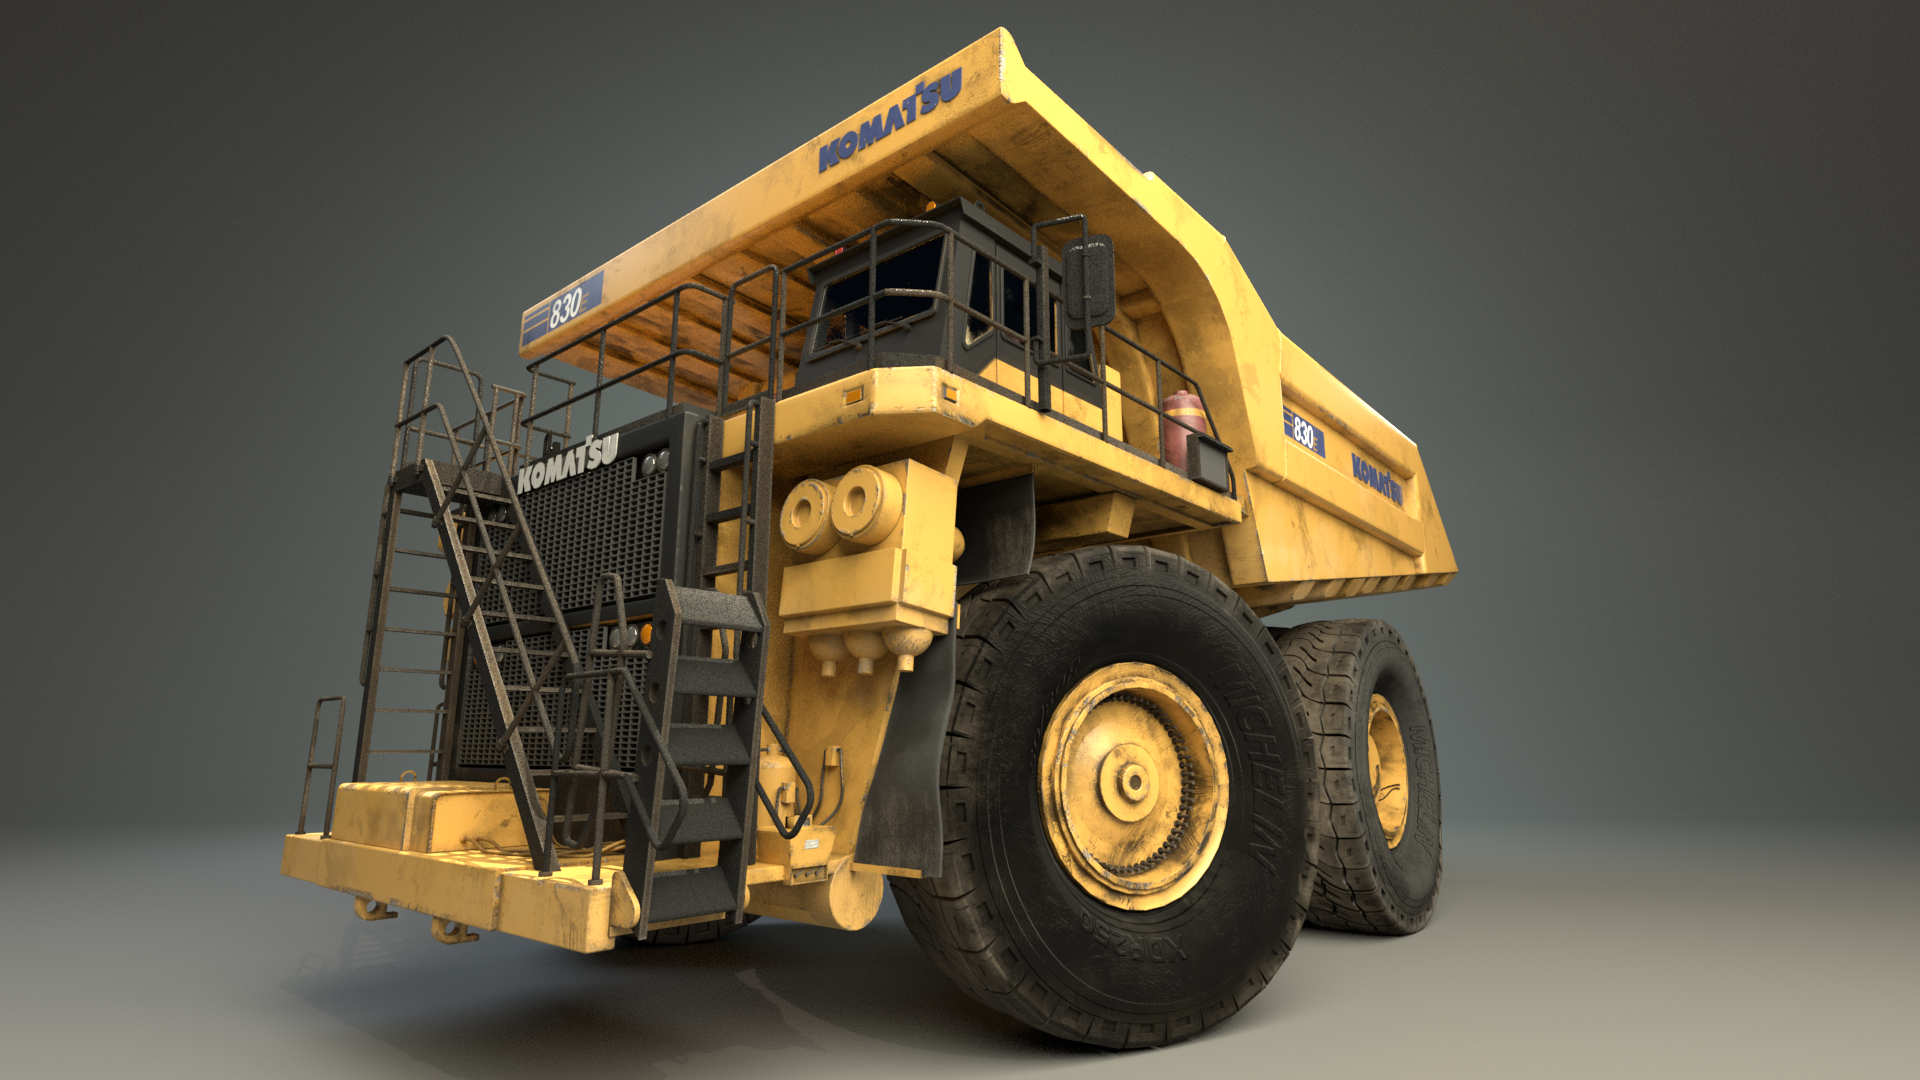 Komatsu 830e-5 Mining Truck